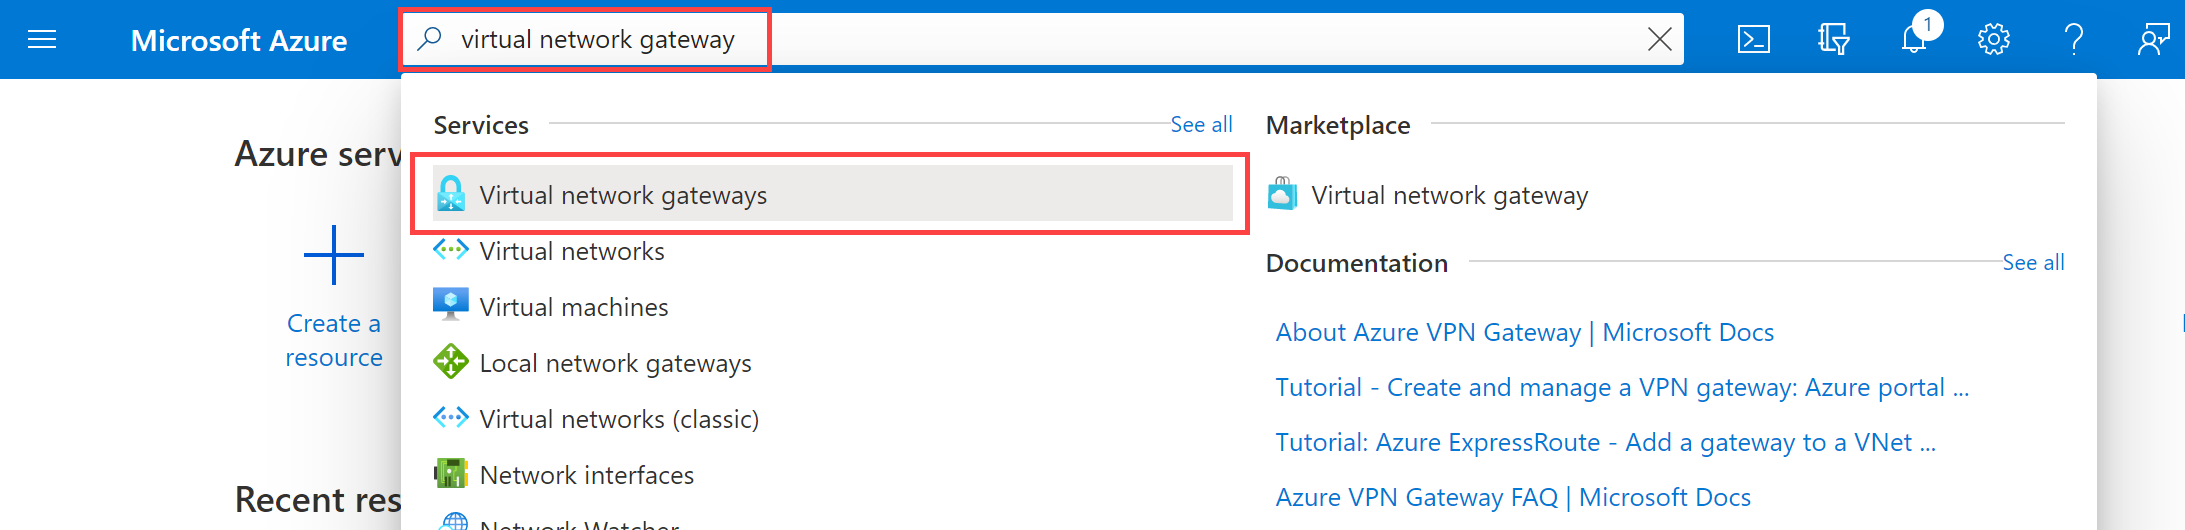 Search for virtual network gateway on Azure Portal.